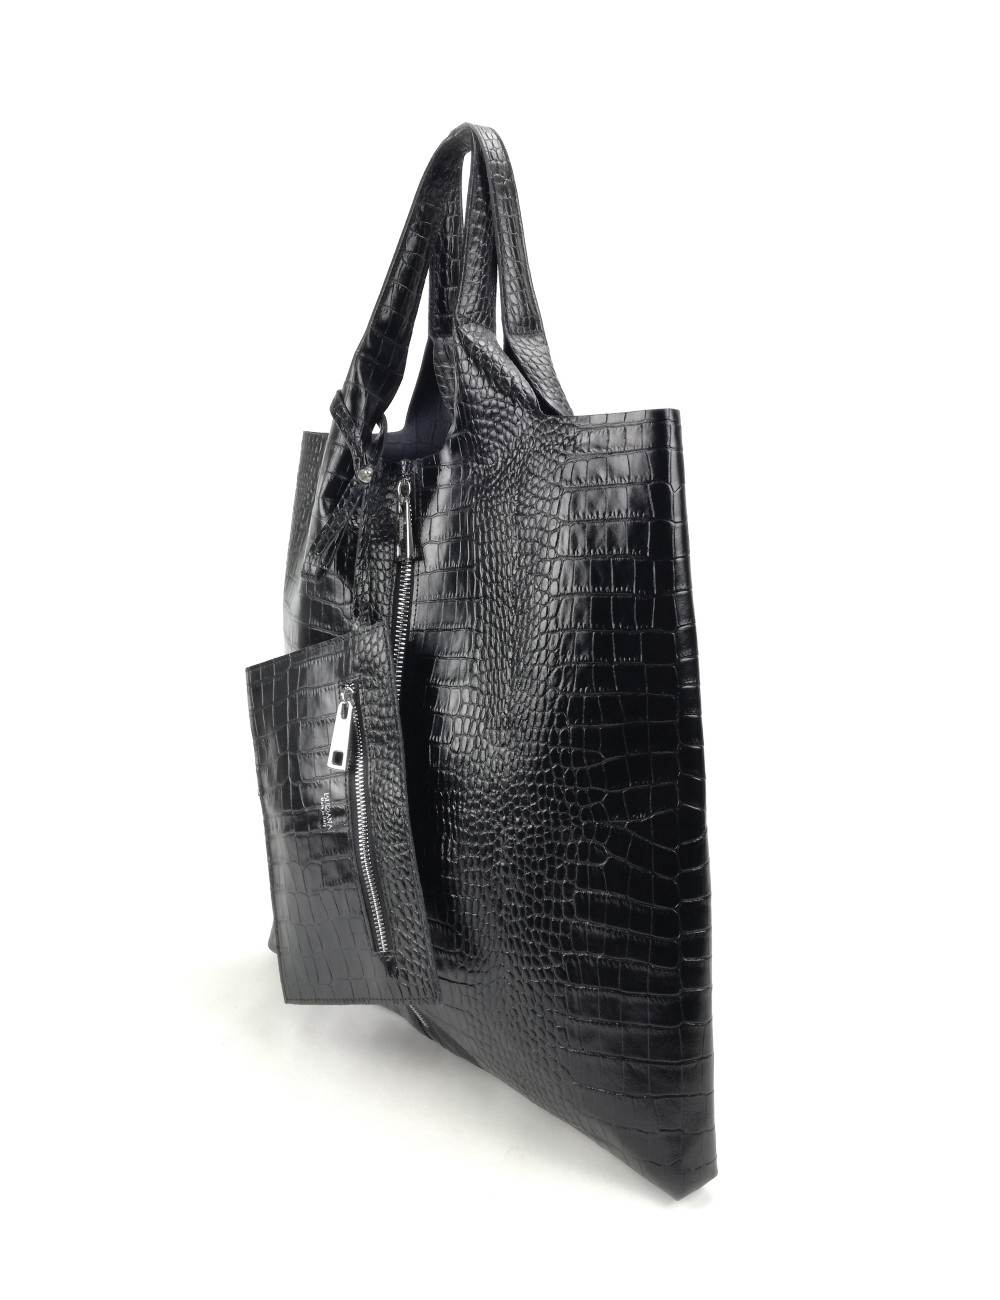 Envelope Zip Shopping Shoulder Bag in Crocodile Print Leather - Black